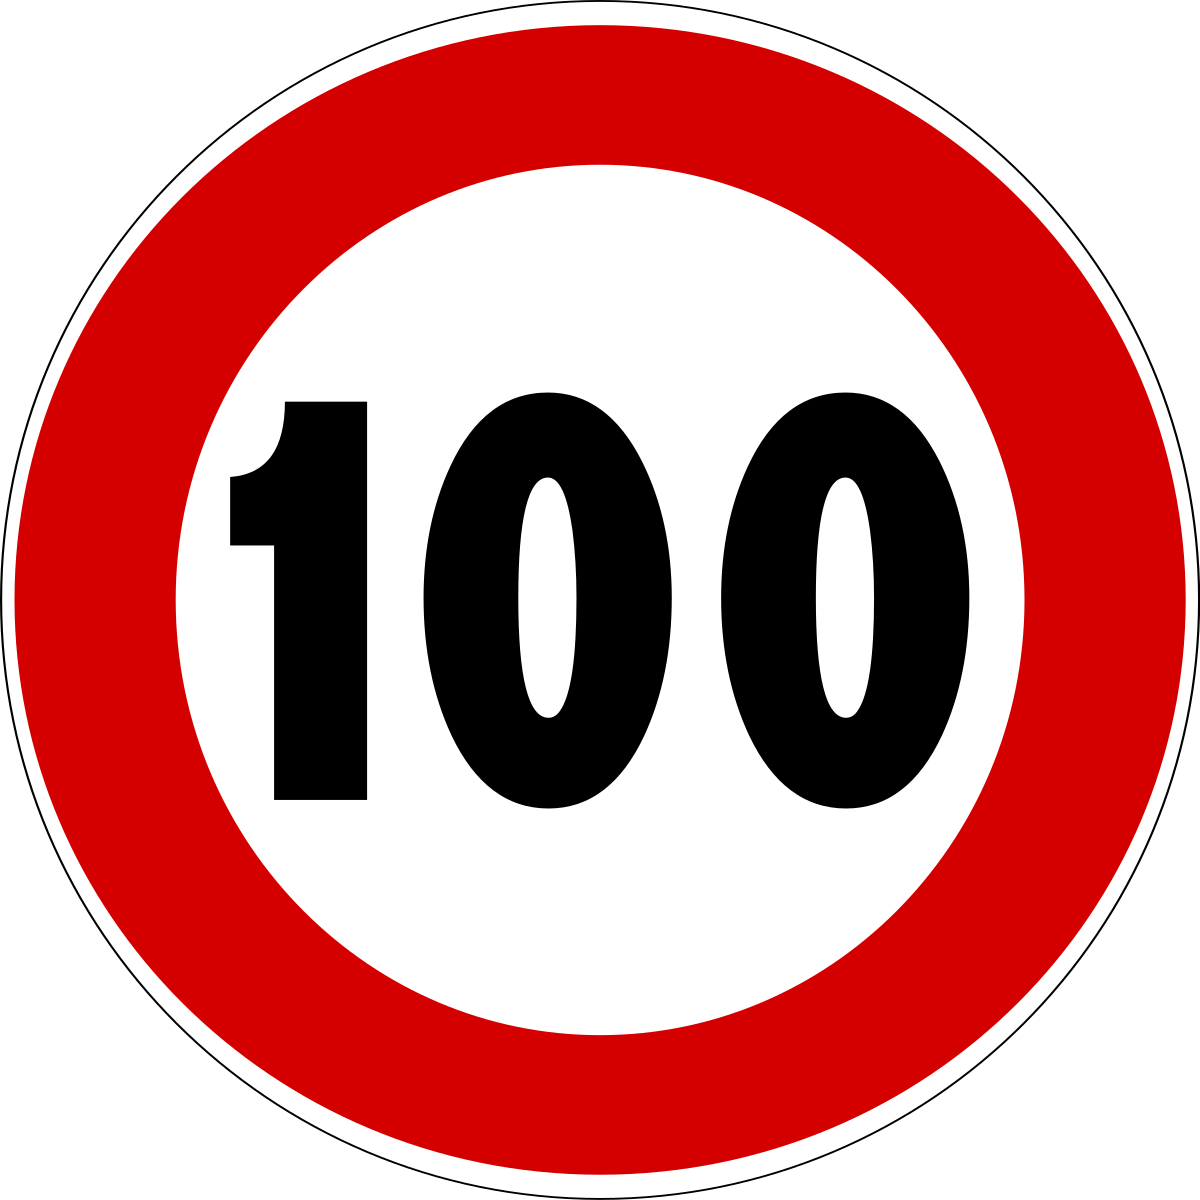 File:Italian traffic signs - limite di velocità 100.svg